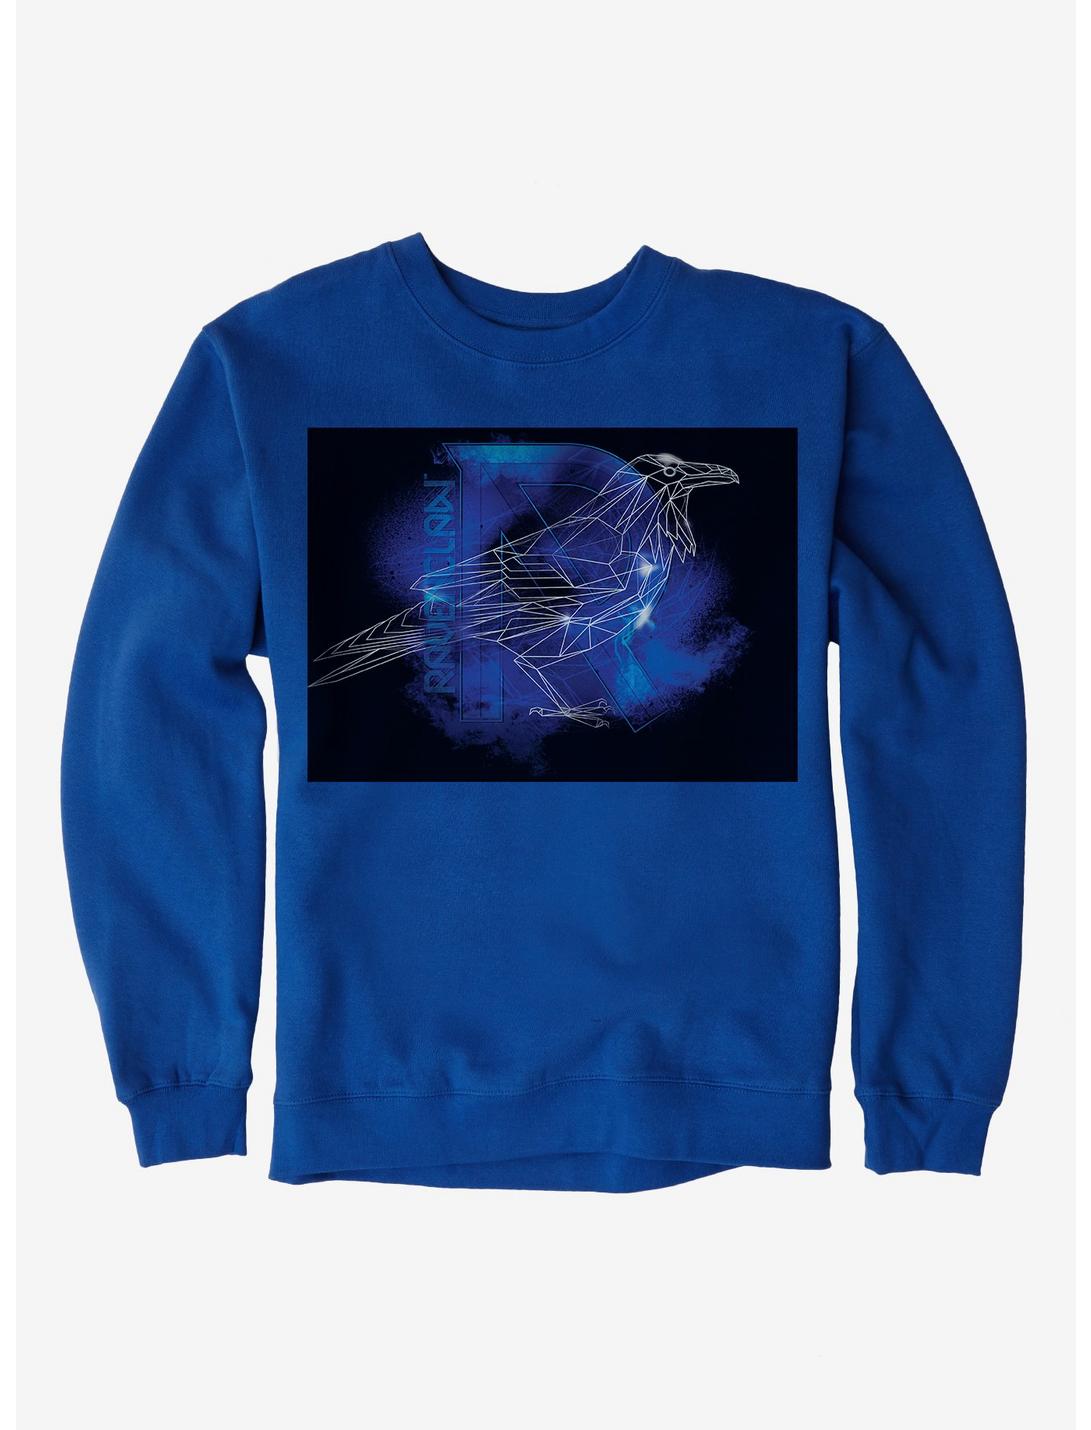 Harry Potter Ravenclaw Logo Outline Royal Blue Sweatshirt, ROYAL BLUE, hi-res